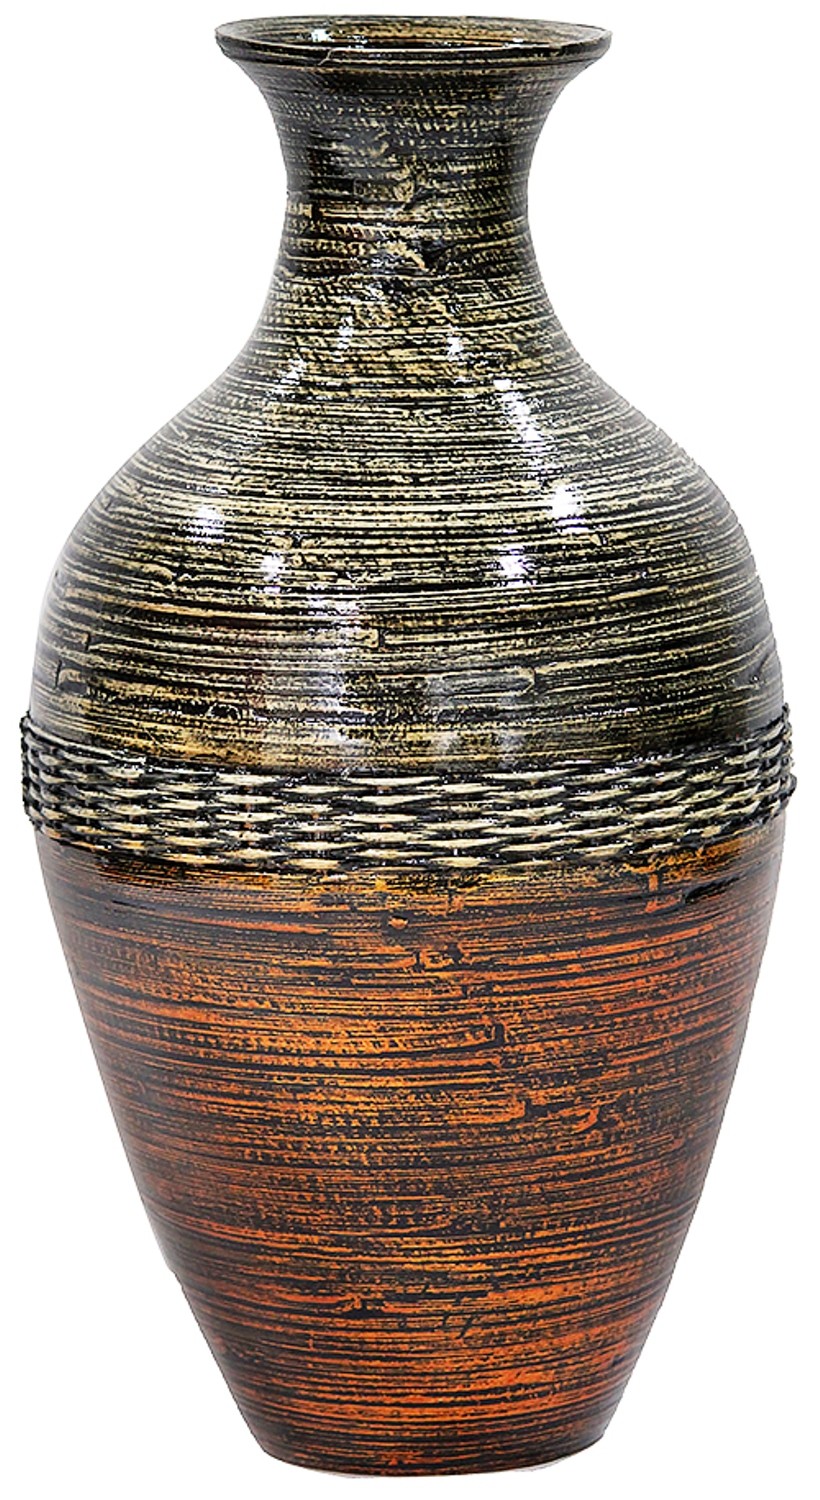 10.7" X 10.7" X 20" Brown And Gold Bamboo Spun Bamboo Vase